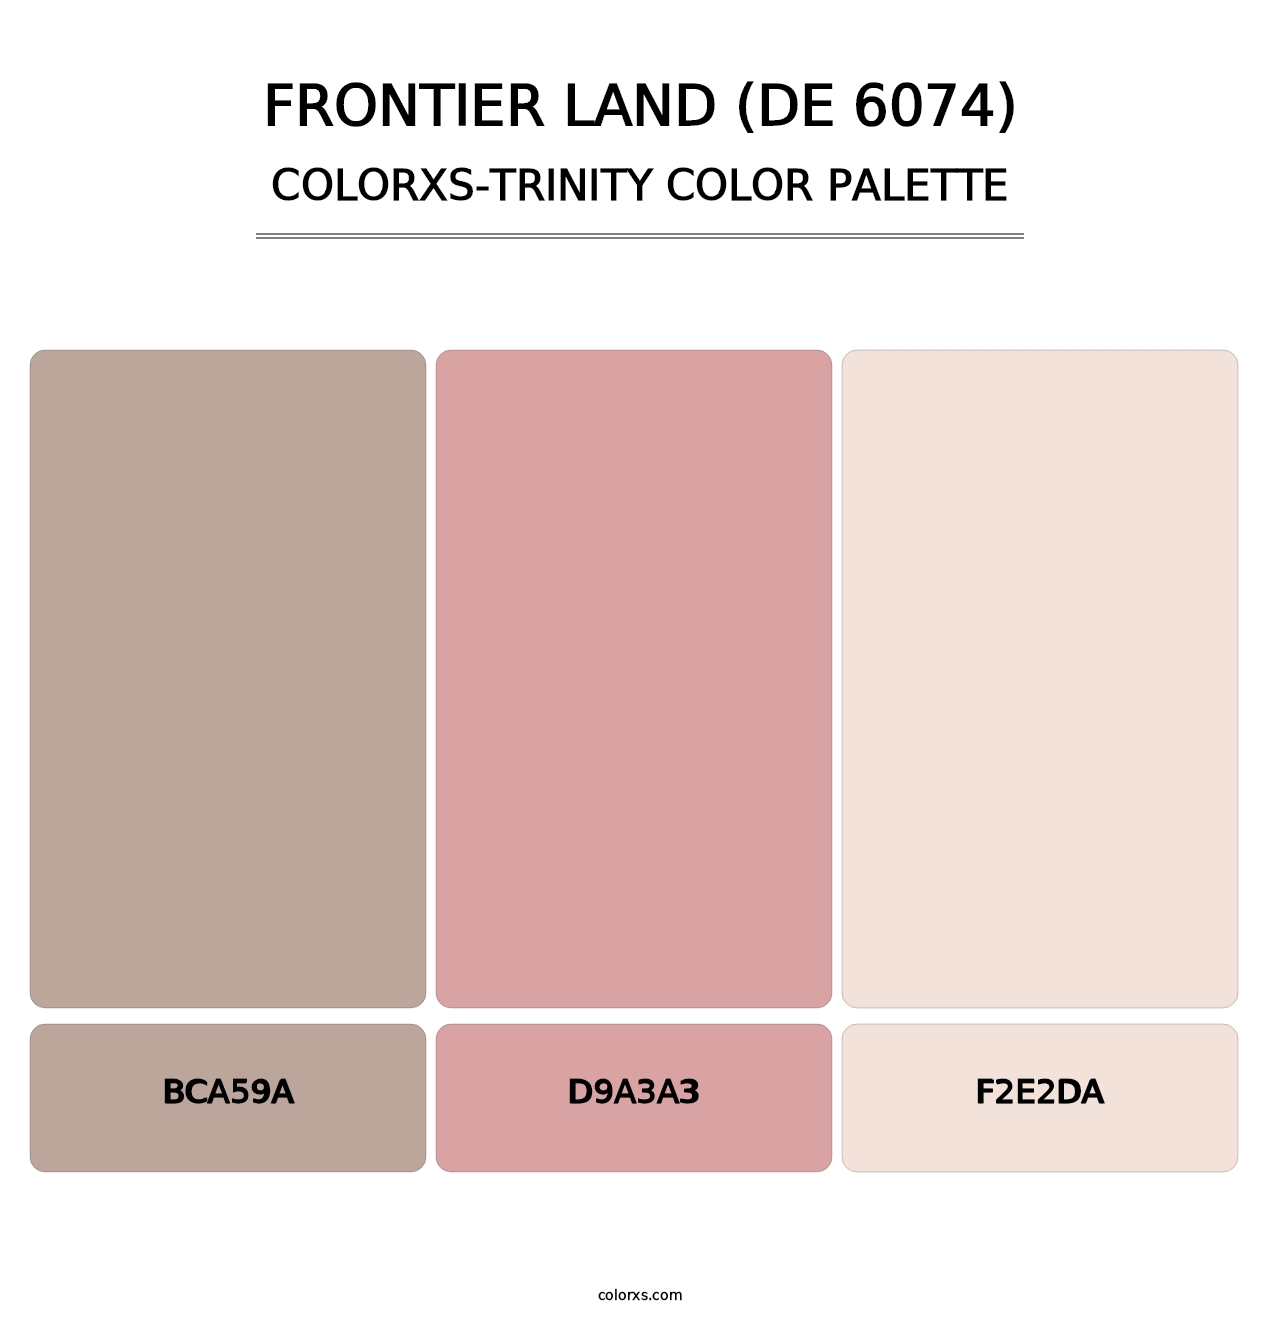 Frontier Land (DE 6074) - Colorxs Trinity Palette